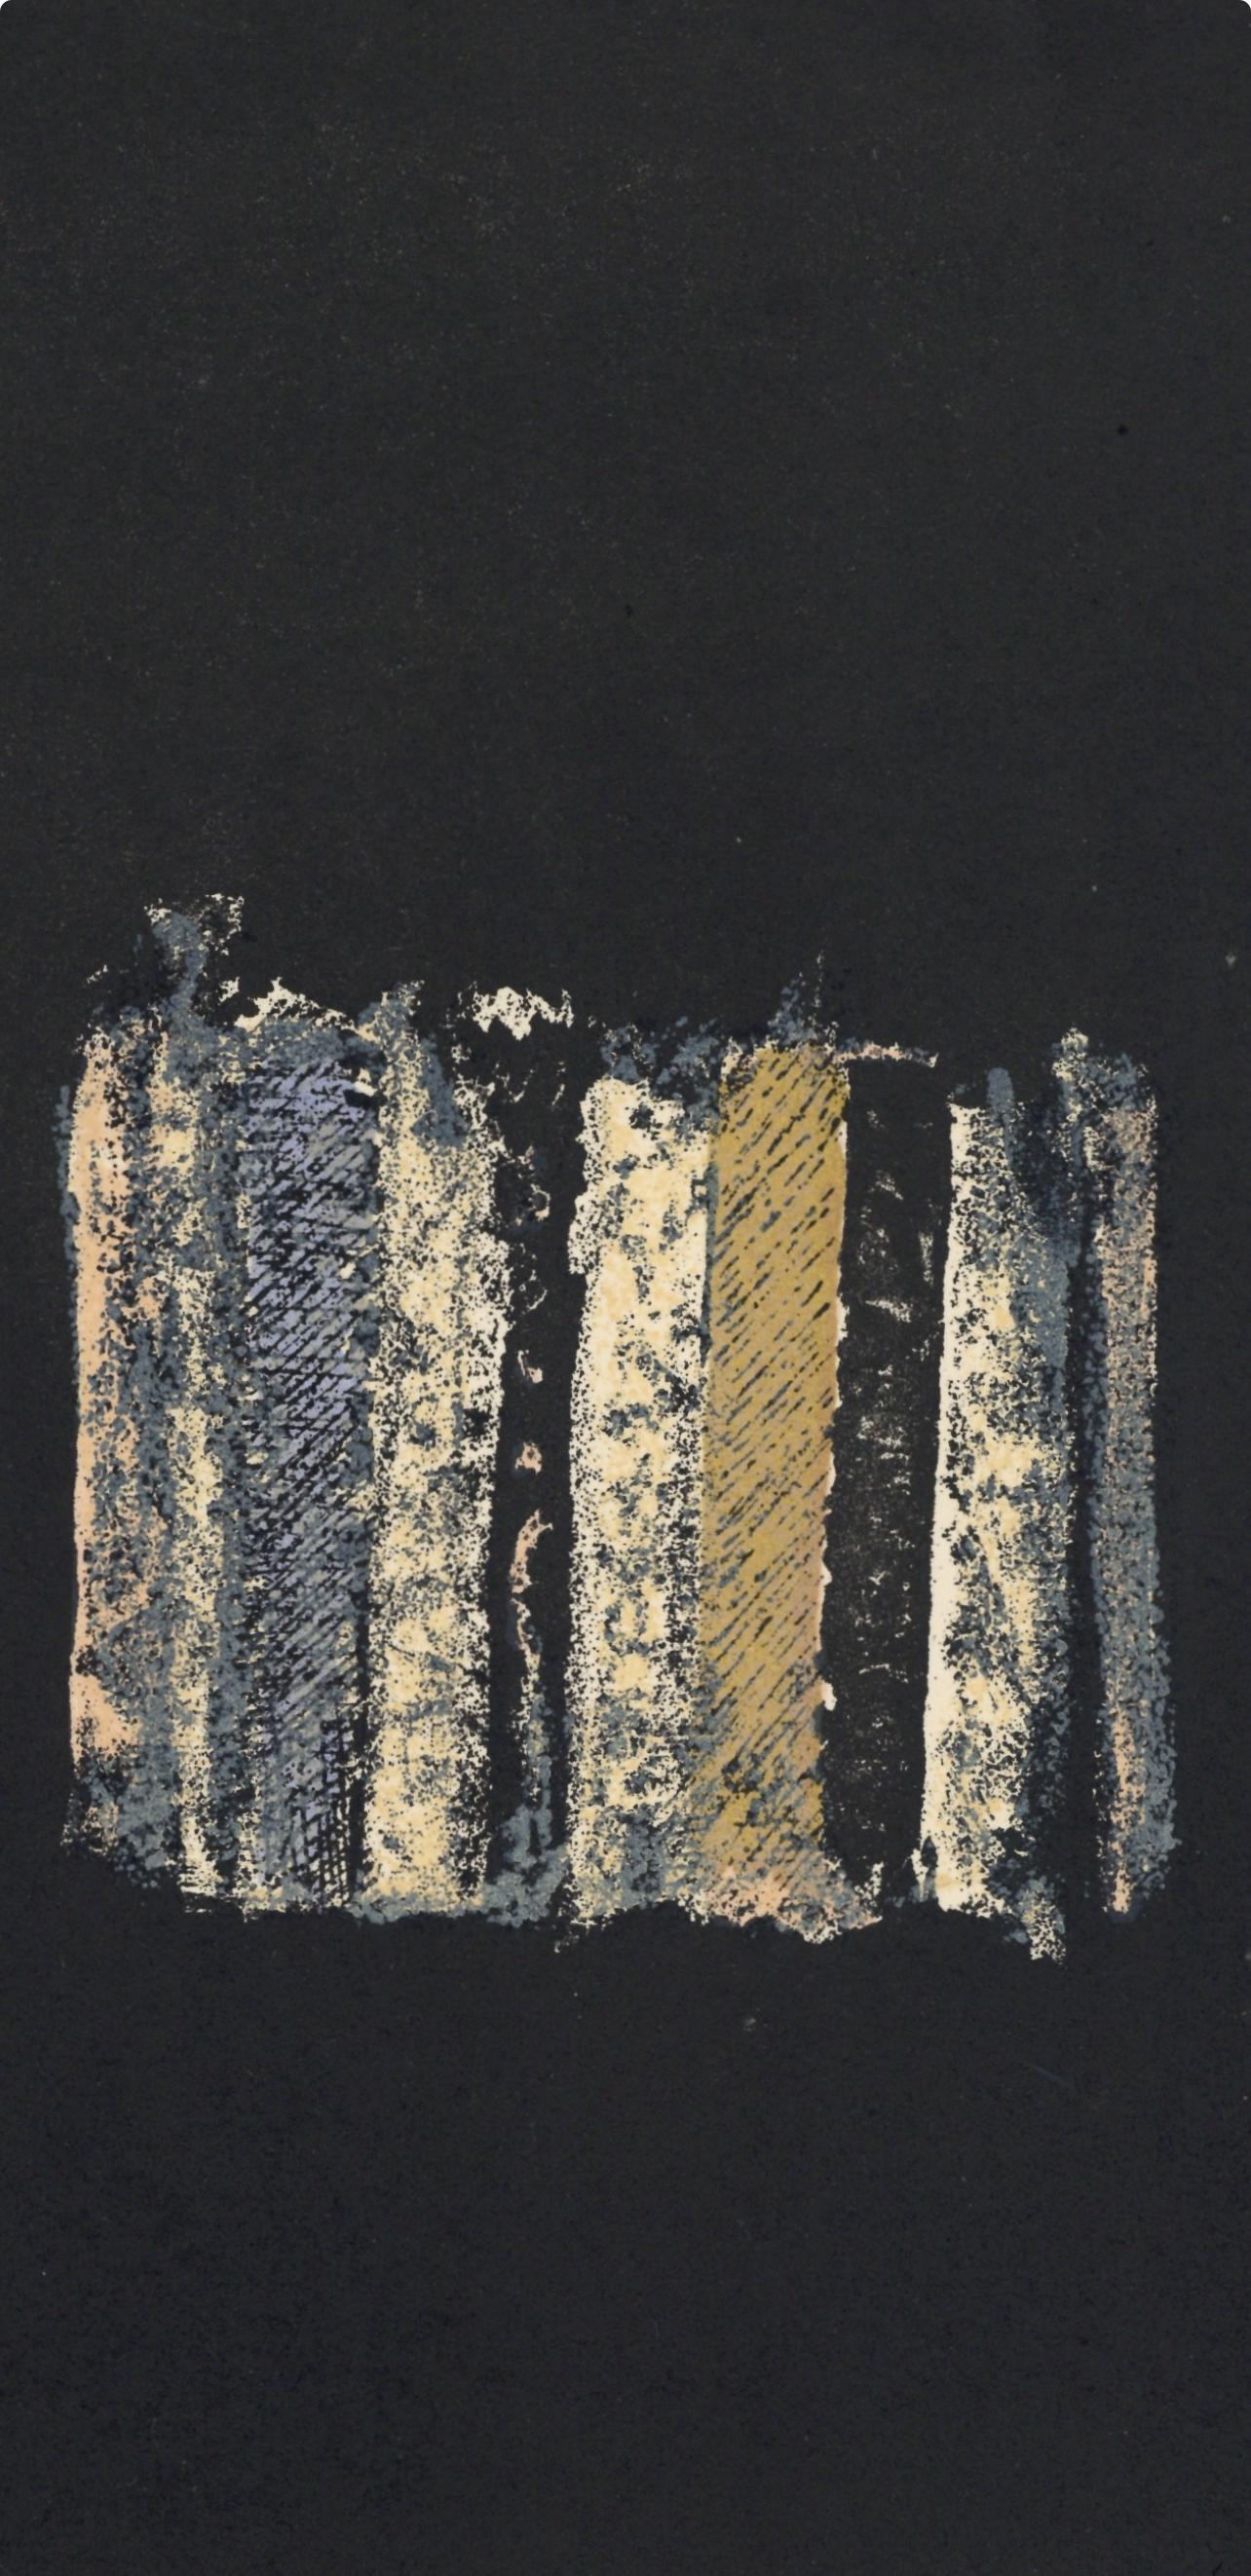 César, Composition, XXe Siècle (after) - Print by César Baldaccini